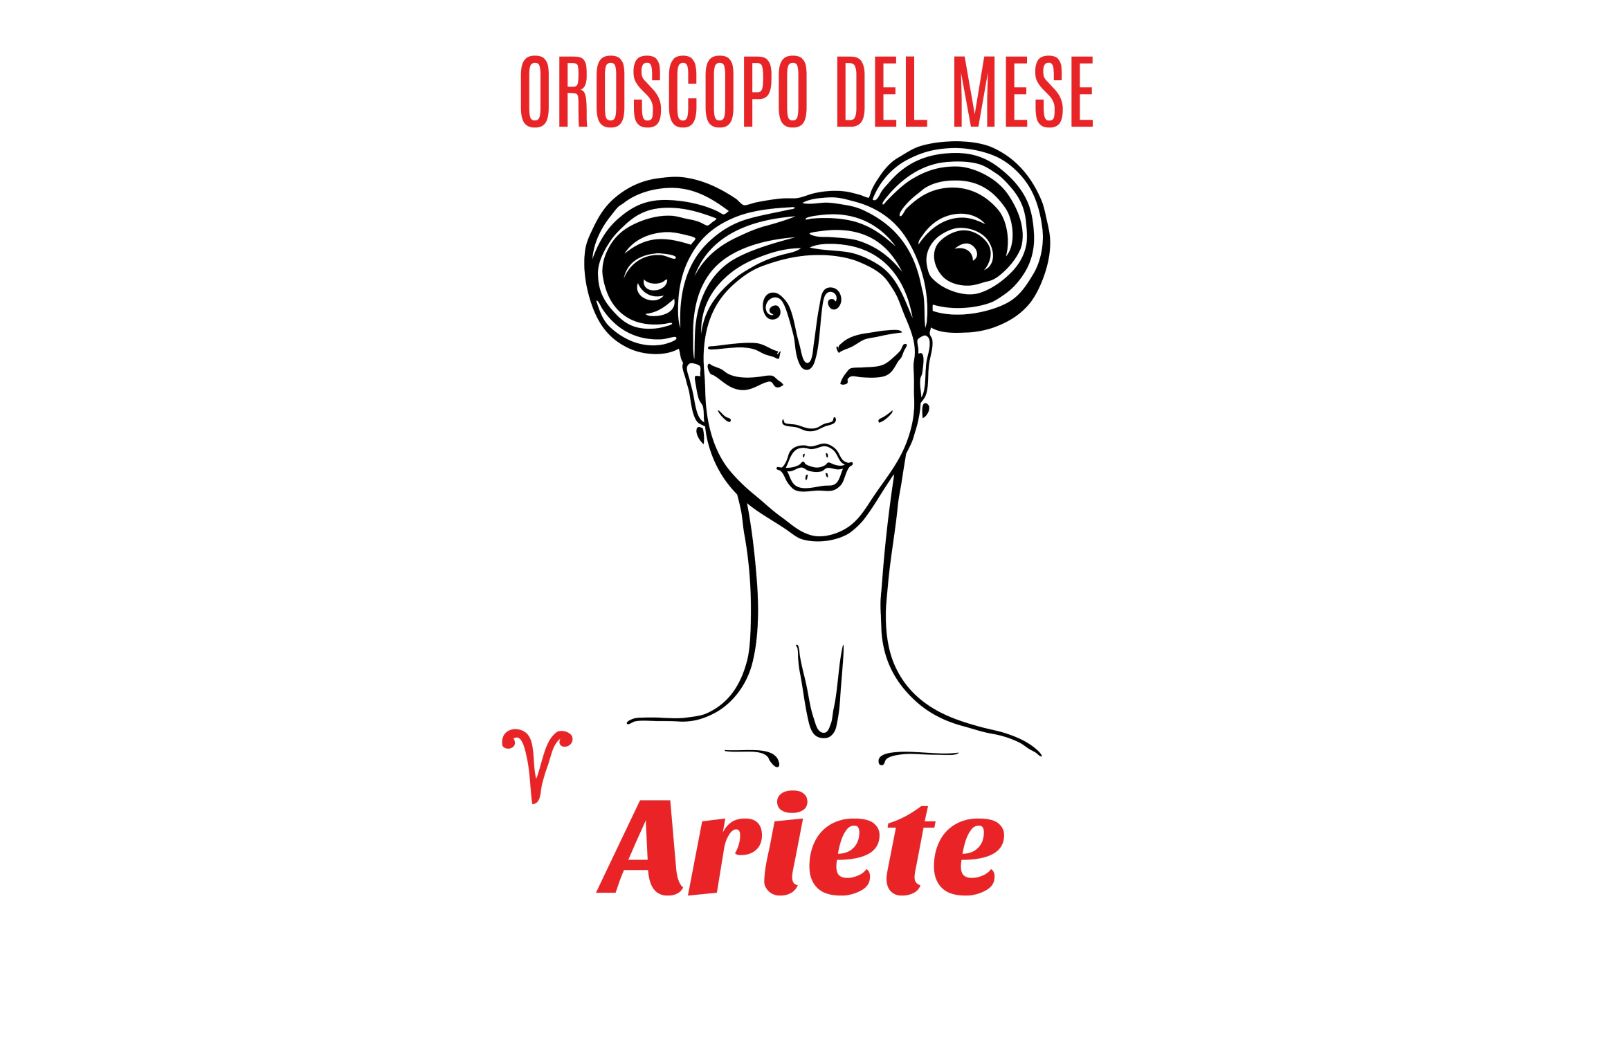 Oroscopo del mese: Ariete - settembre 2019